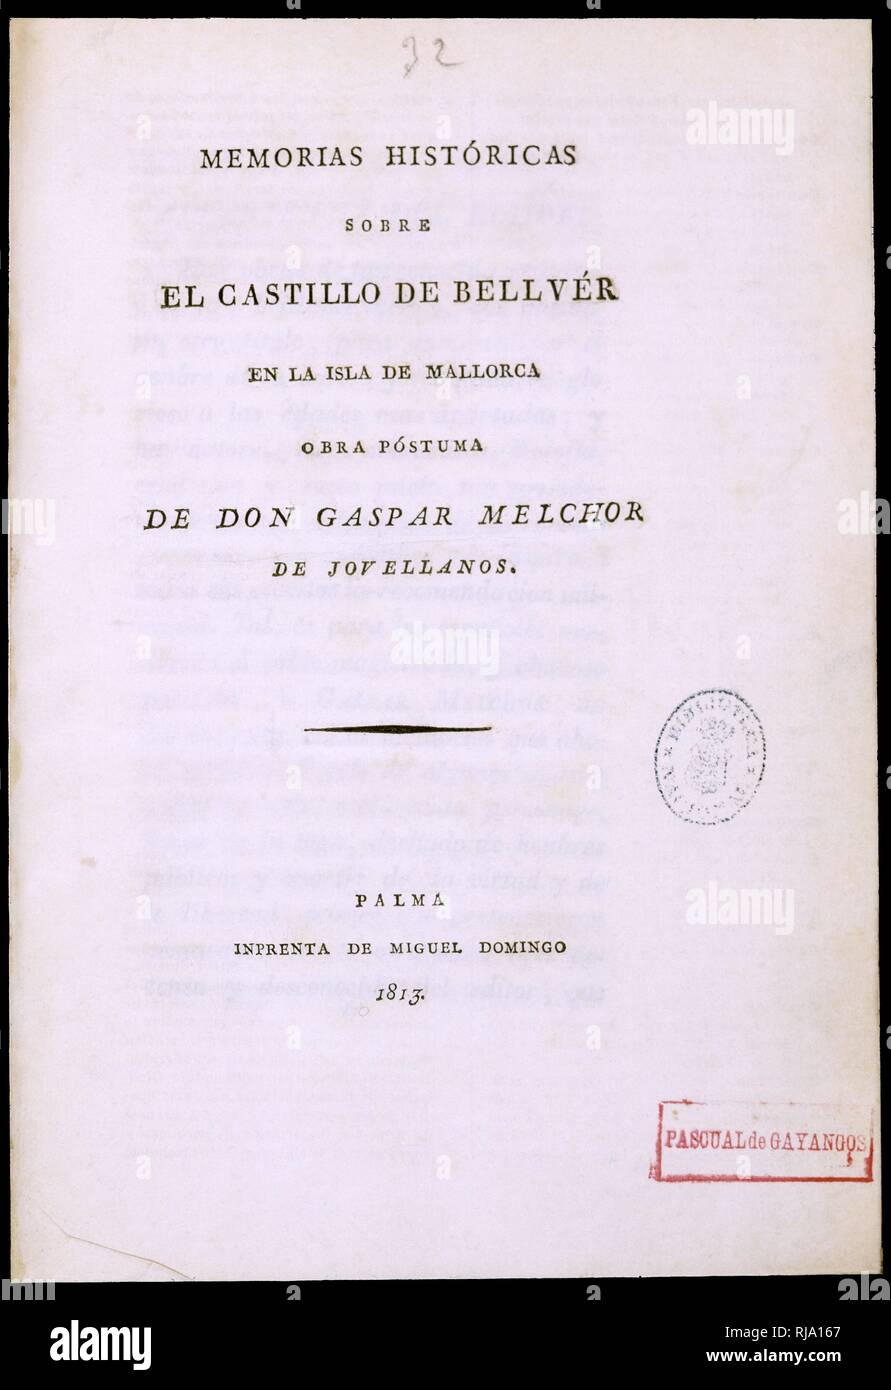 MEMORIAS HISTORICAS SOBRE EL CASTILLO DE BELLVER EN LA ISLA DE MALLORCA. Author: JOVELLANOS GASPAR. Location: BIBLIOTECA NACIONAL-COLECCION. MADRID. SPAIN. Stock Photo